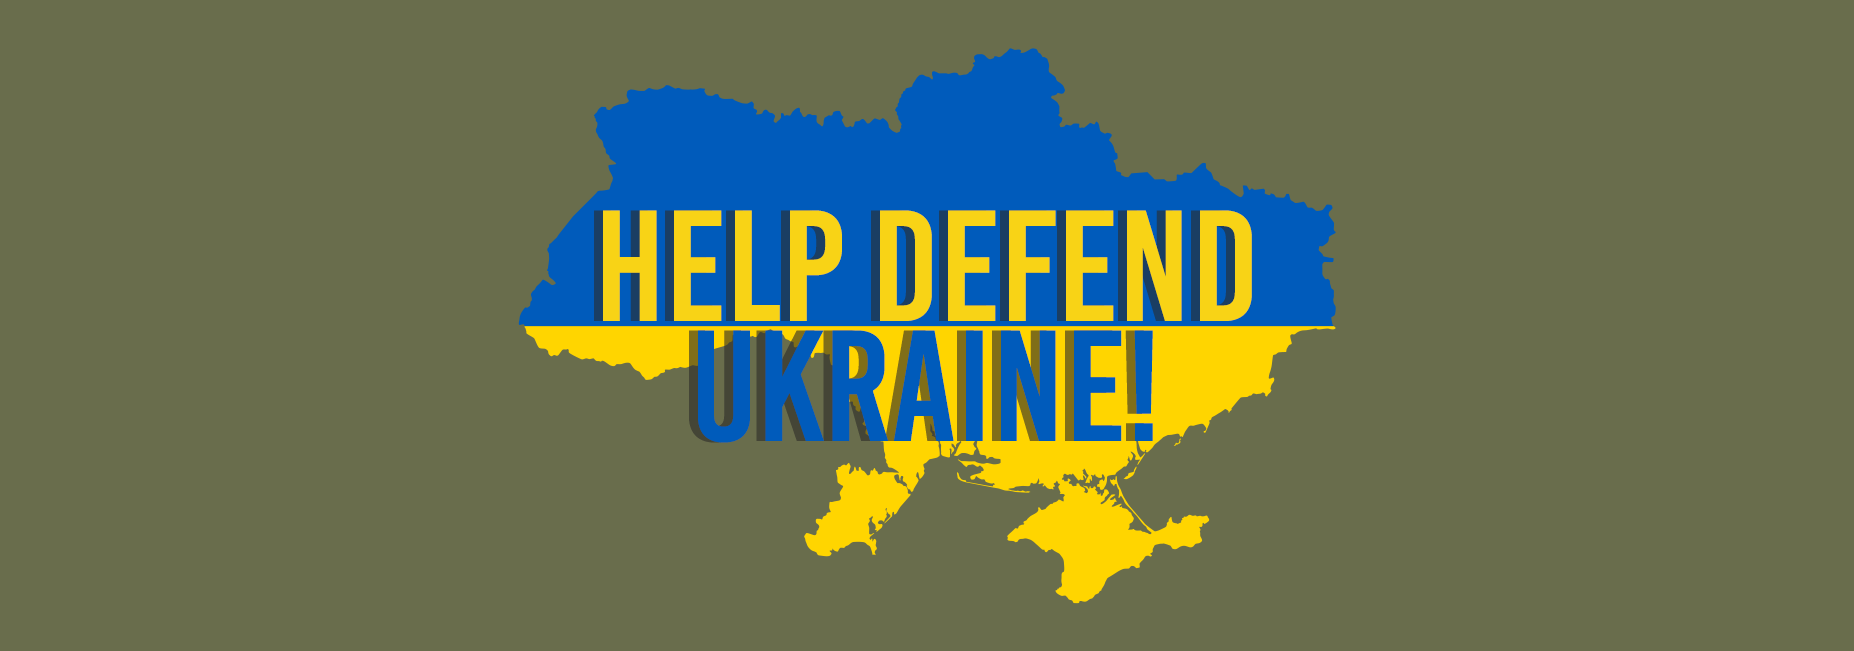 help defend ukraine